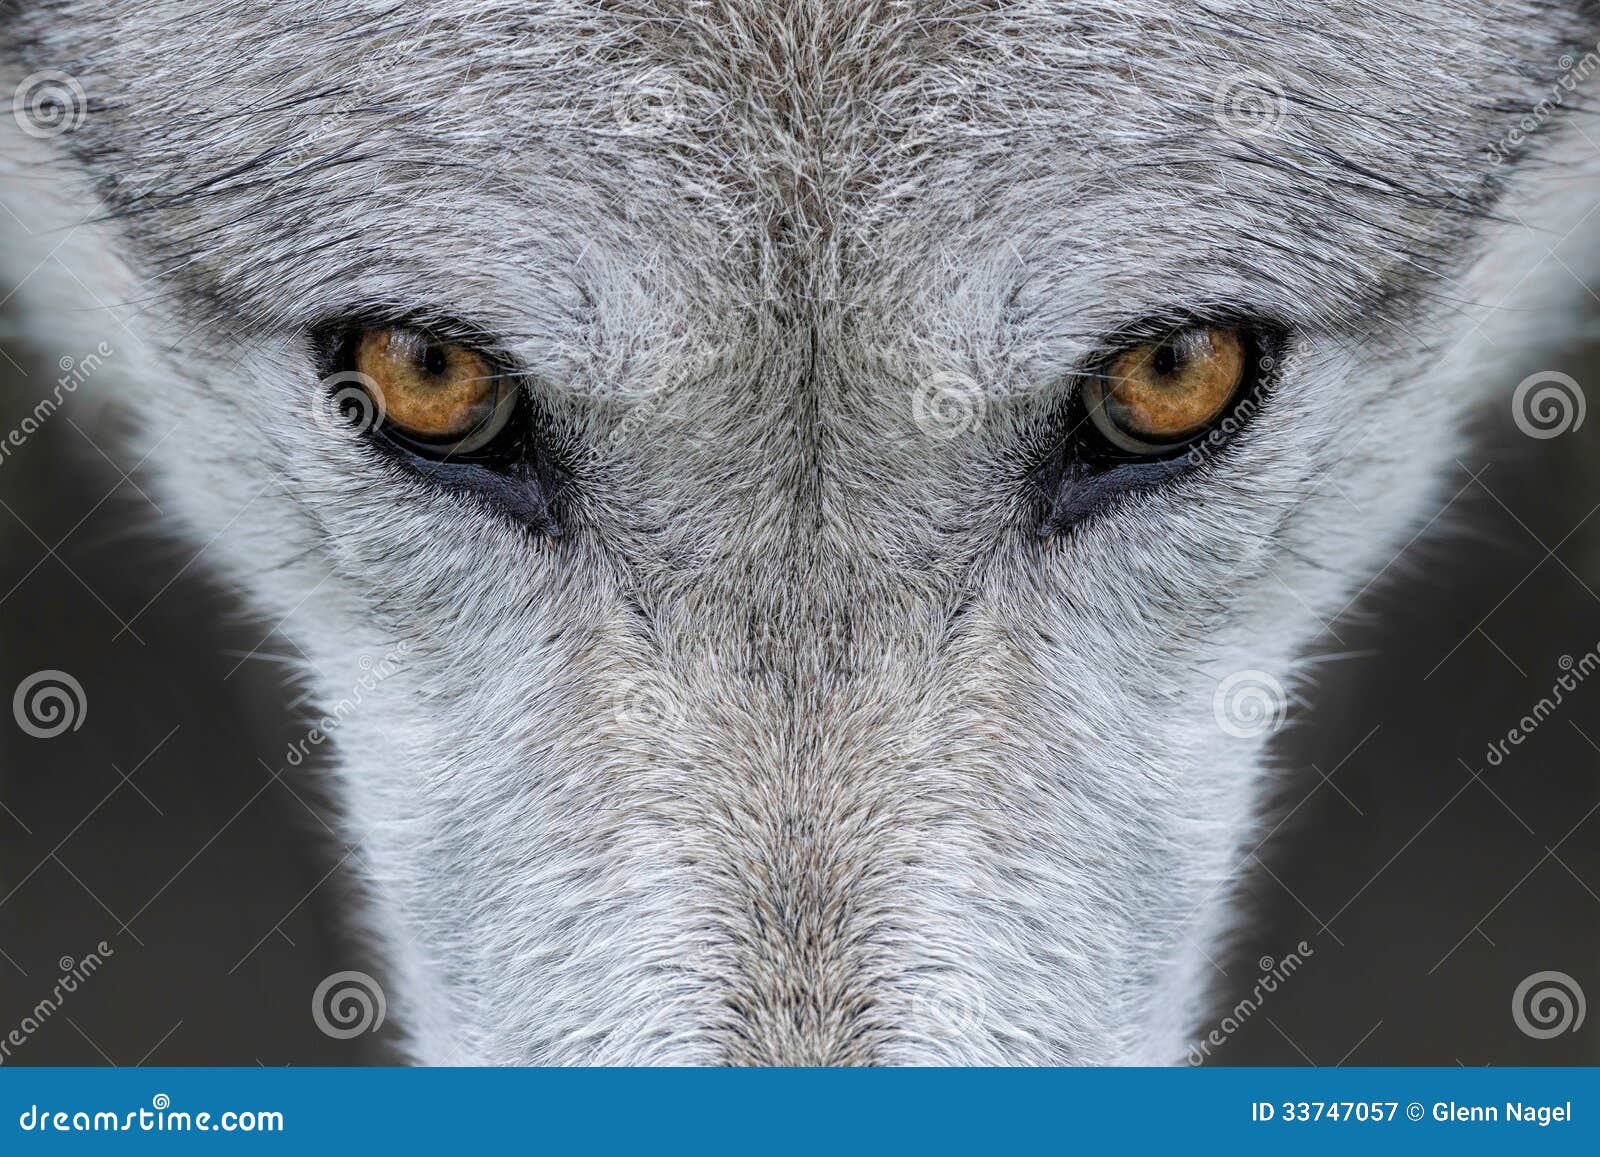 狼的眼睛壁纸,狼壁纸眼睛 - 伤感说说吧